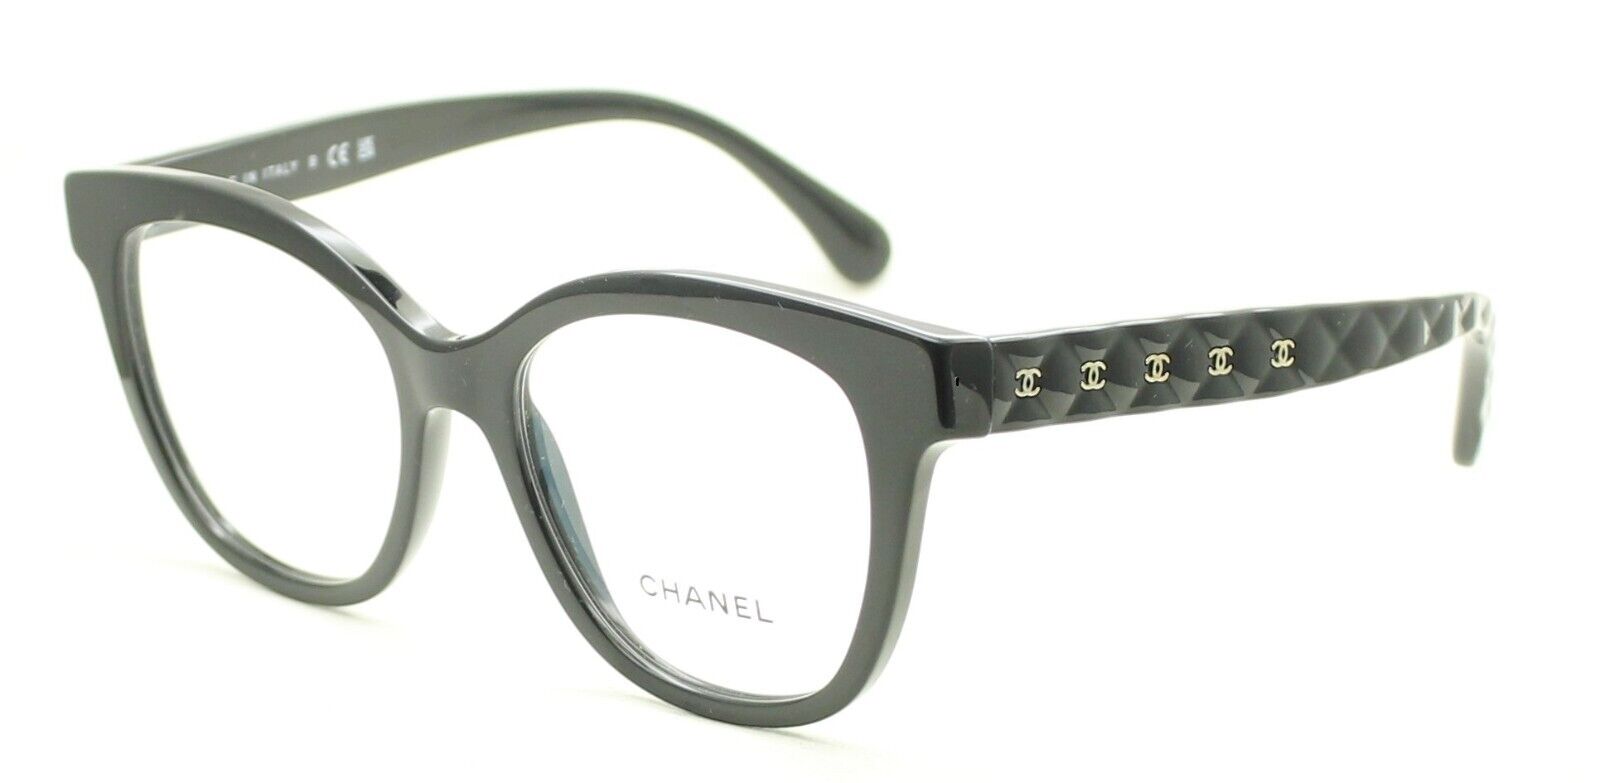 CHANEL 3289-Q c.730 Eyewear FRAMES Eyeglasses RX Optical Glasses New BNIB  -Italy - GGV Eyewear